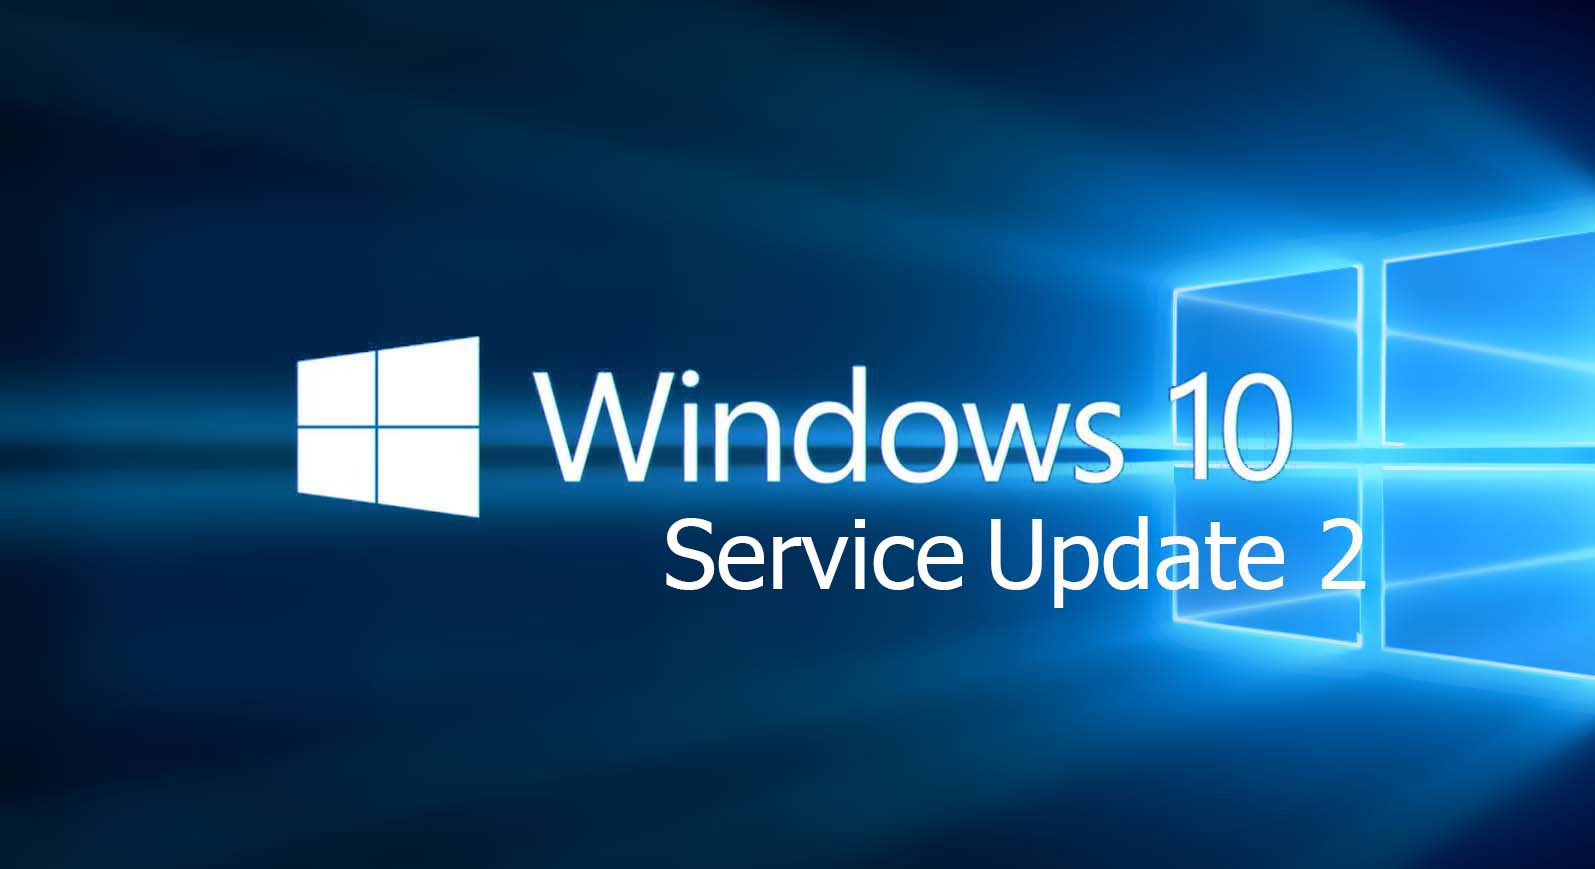 Windows 10 Servie Update 2